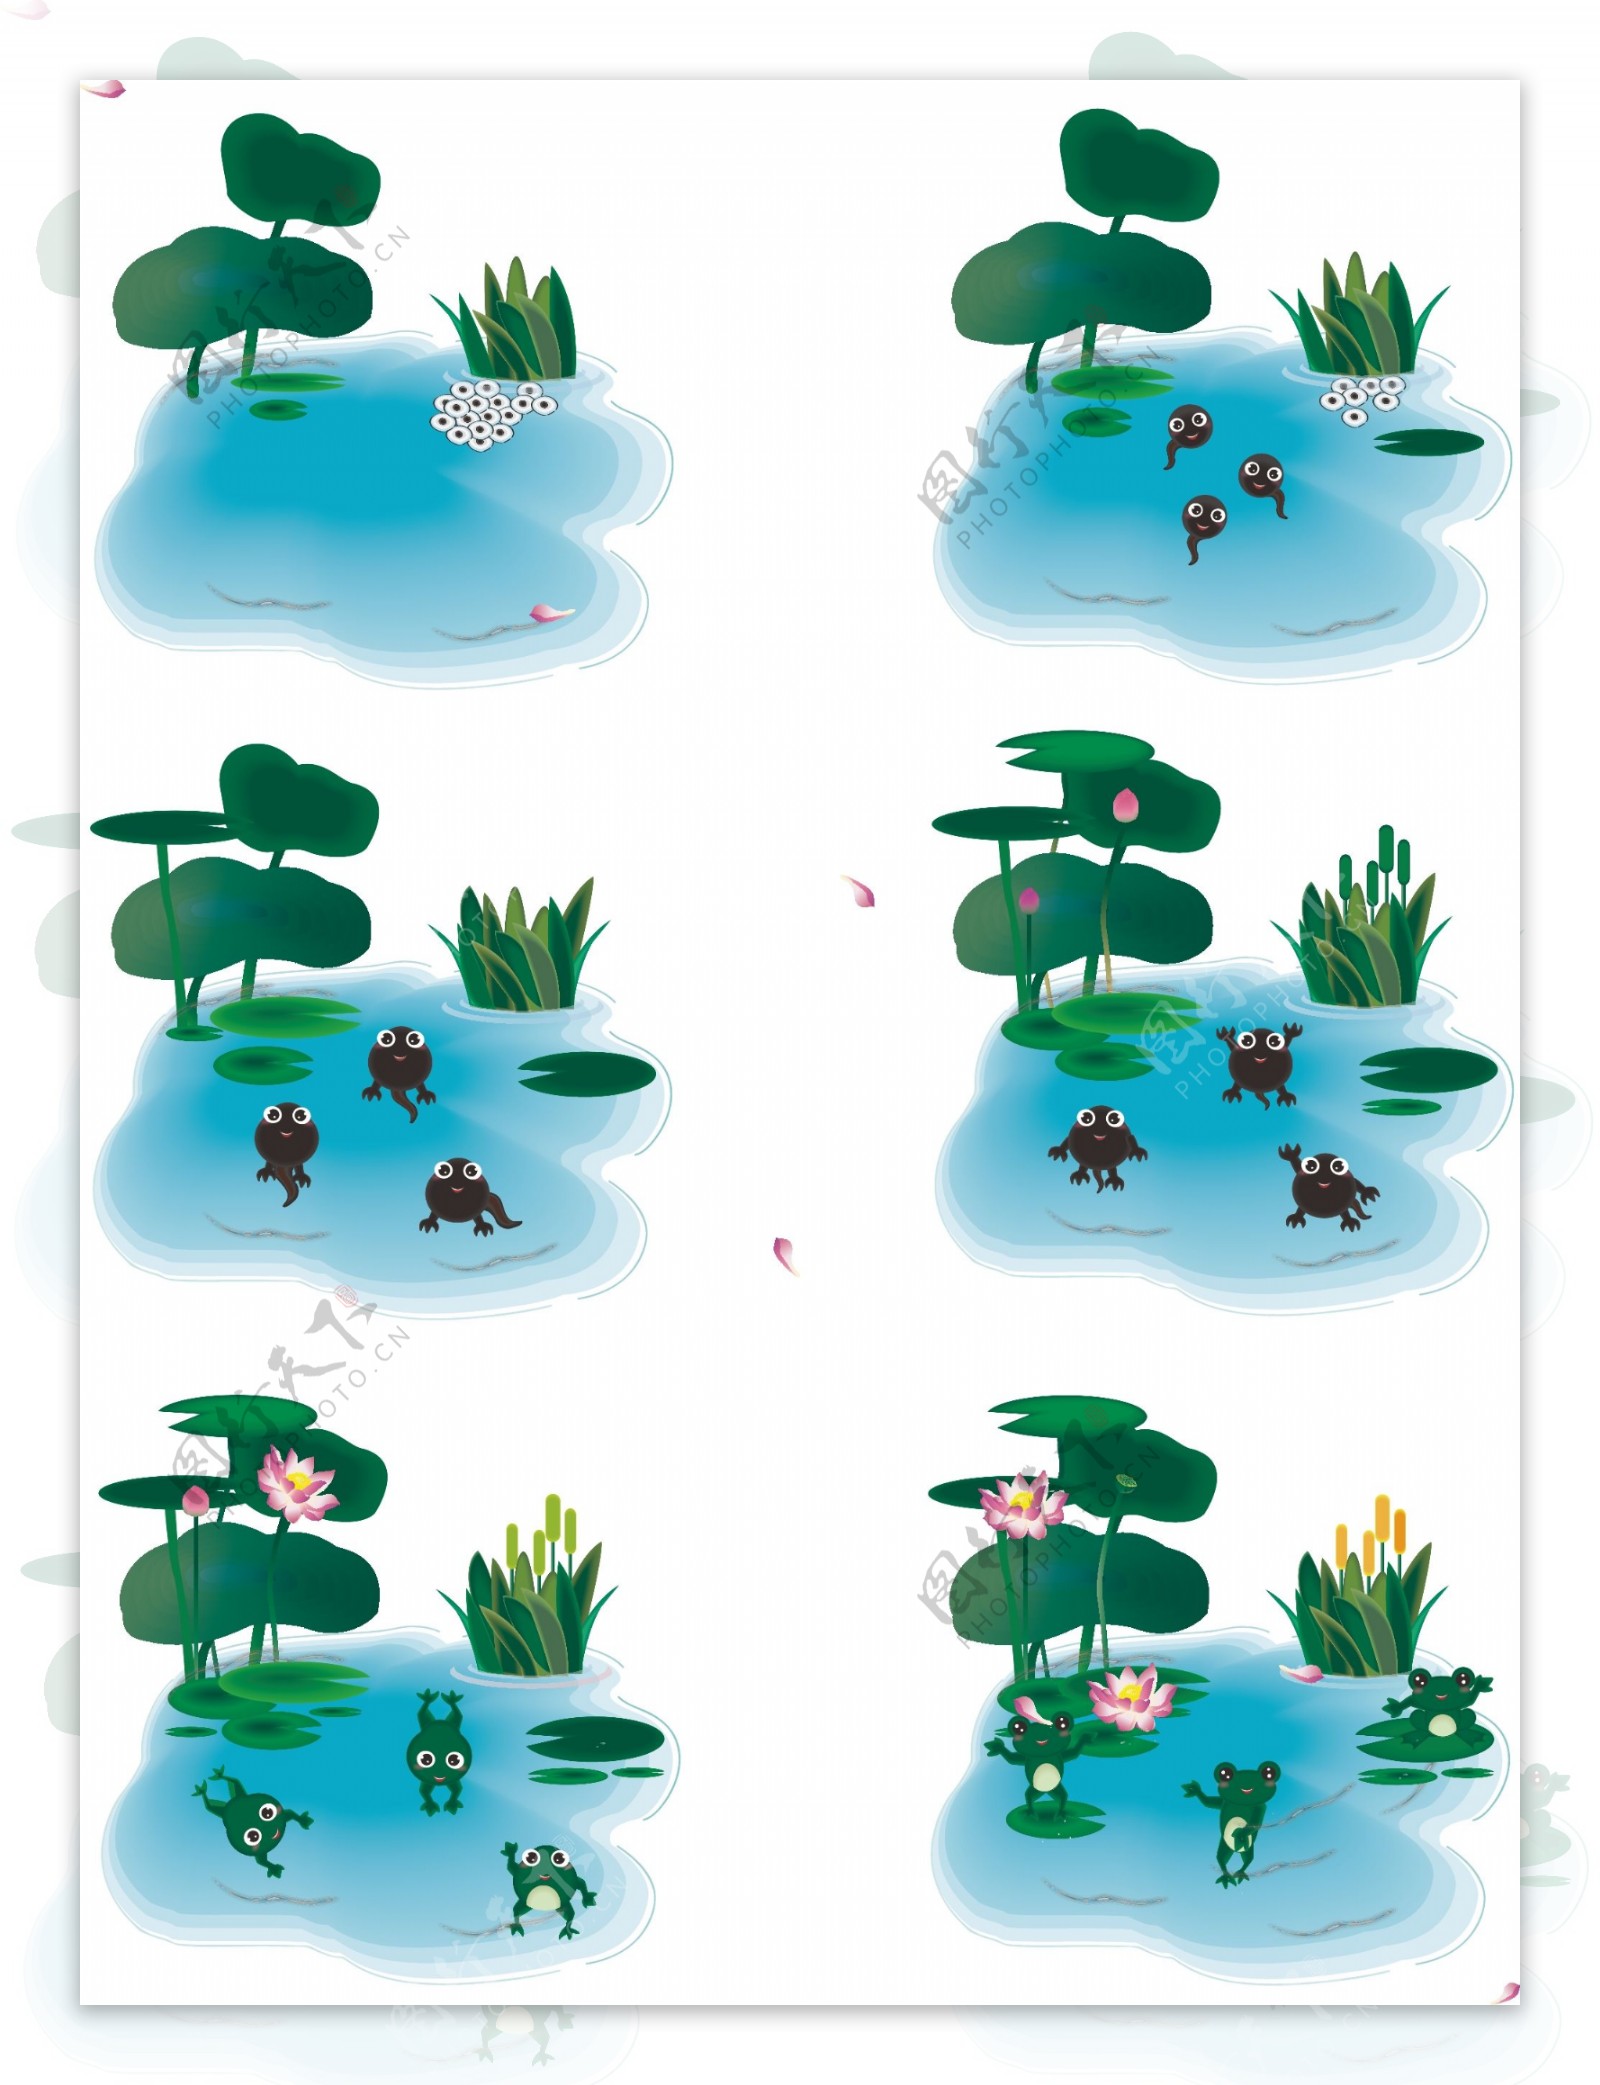 手绘风卡通植物荷花动物青蛙生长过程元素